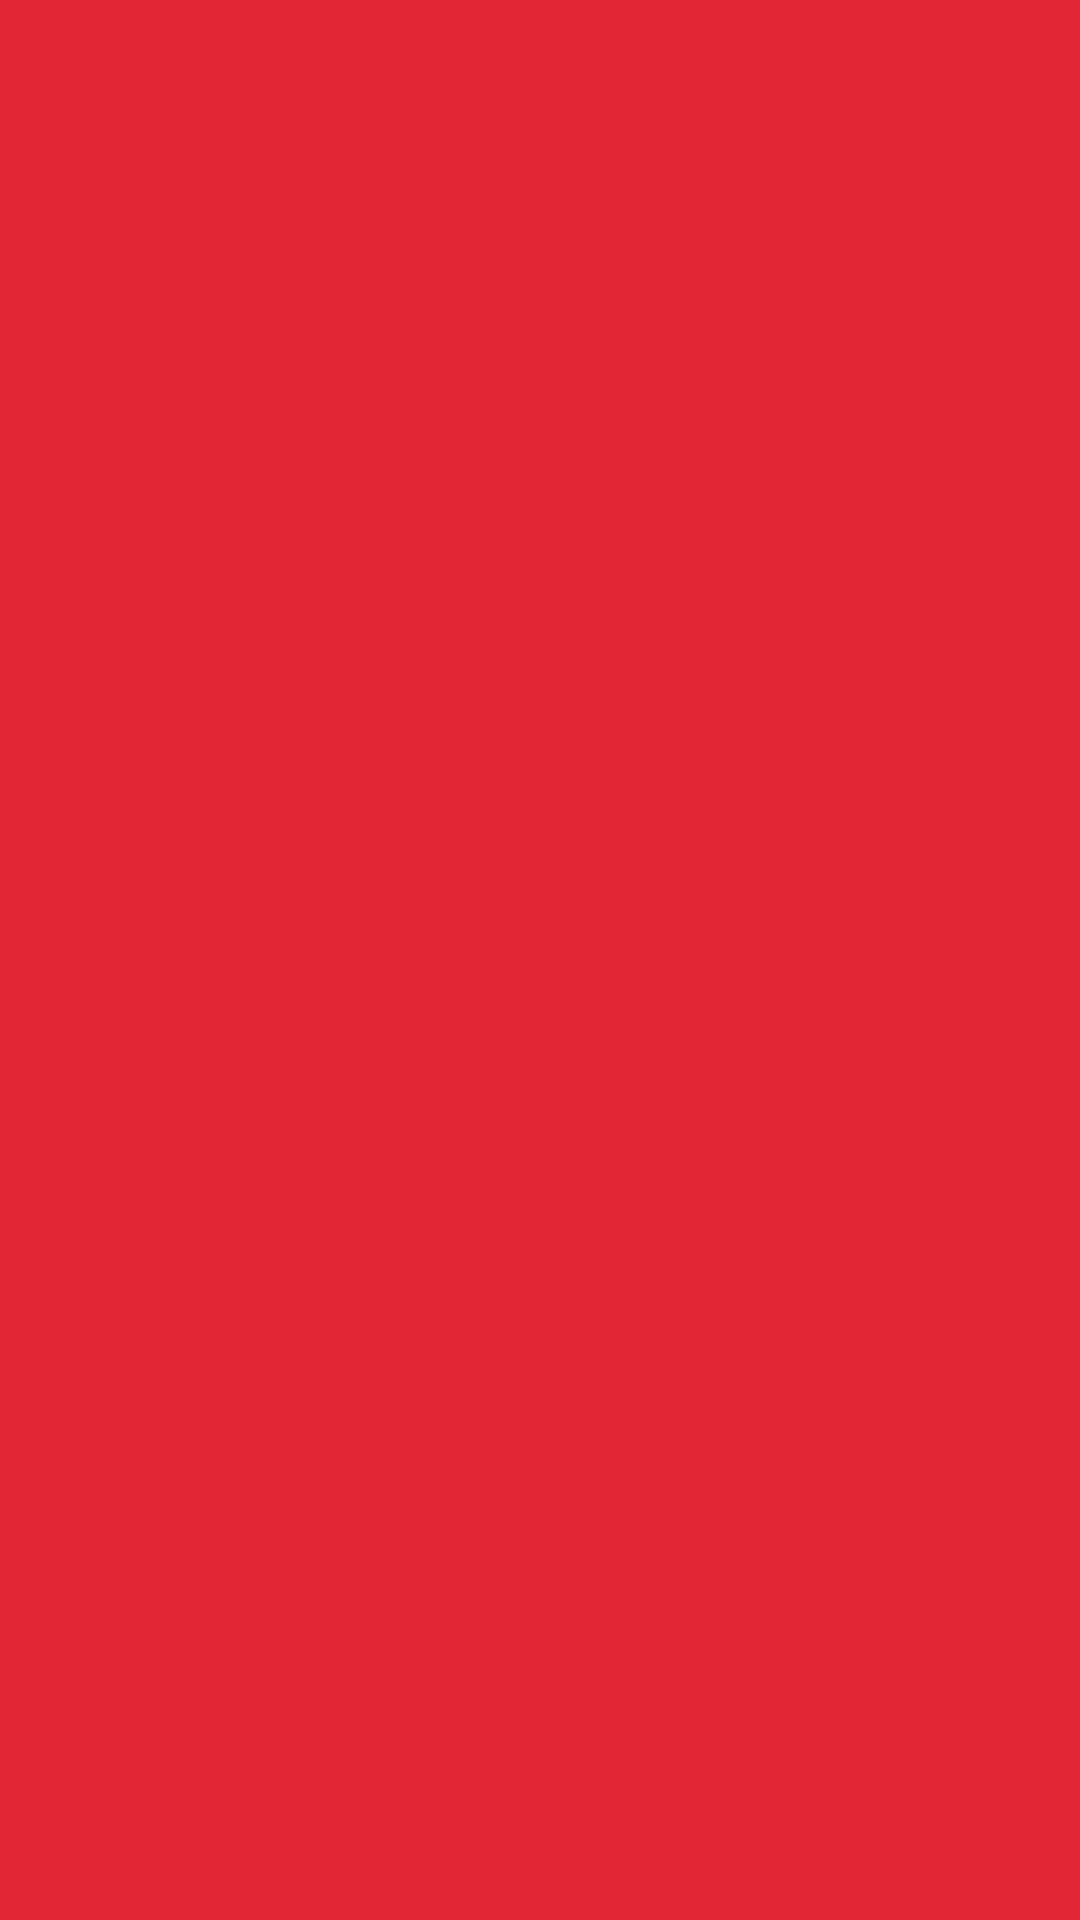 1080x1920 Alizarin Crimson Solid Color Background